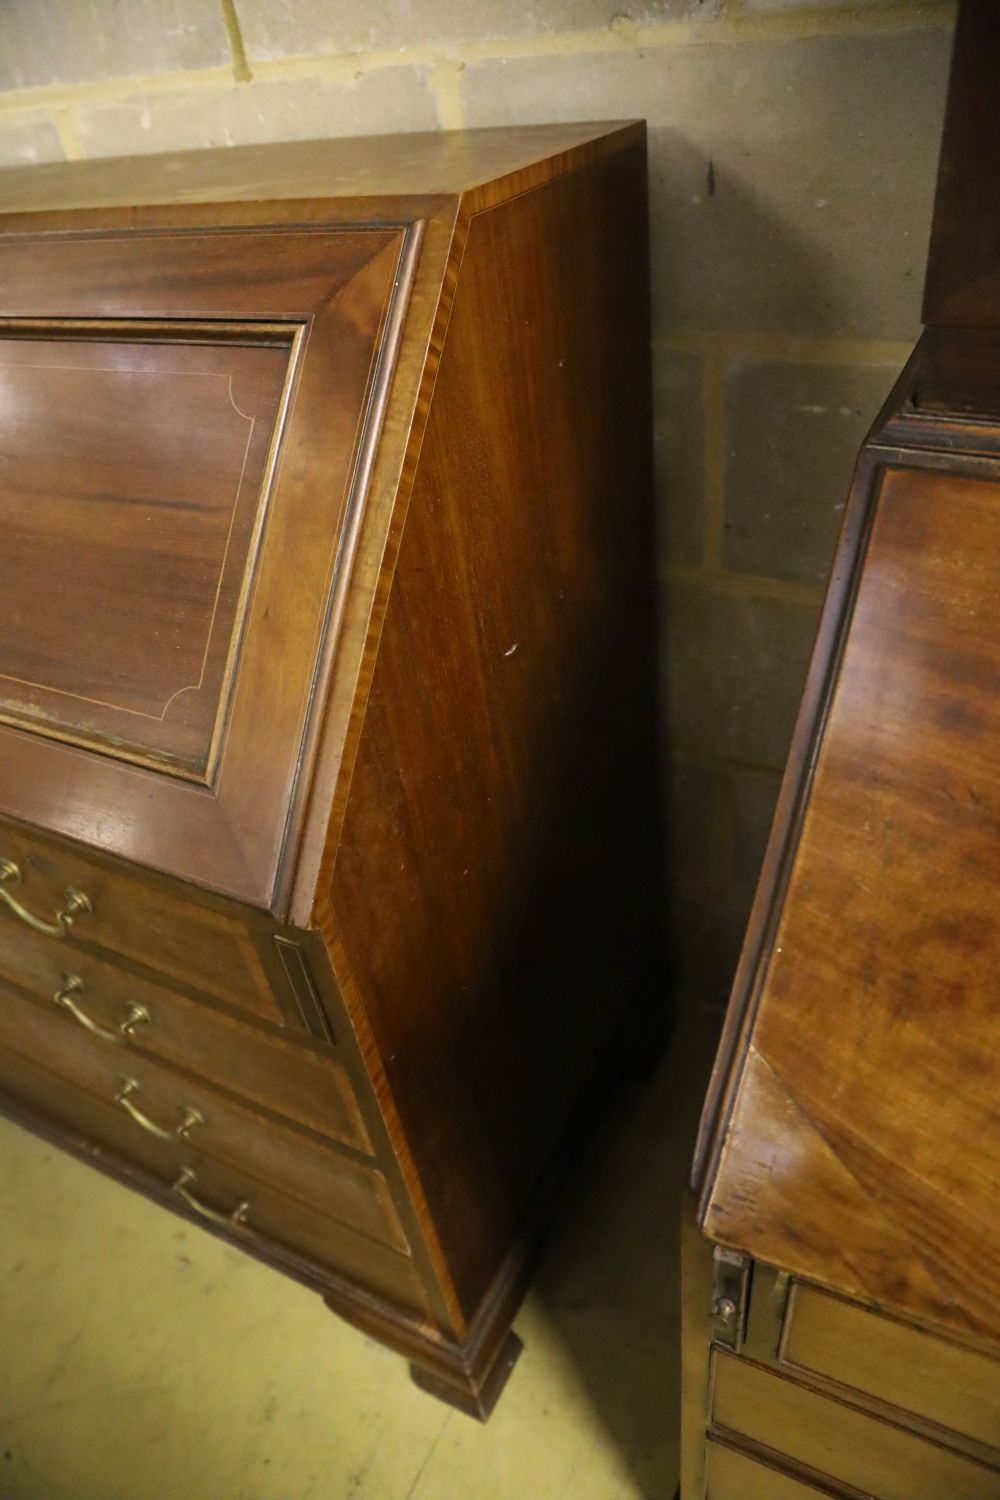 An Edwardian inlaid mahogany bureau, width 102cm, depth 53cm, height 108cm